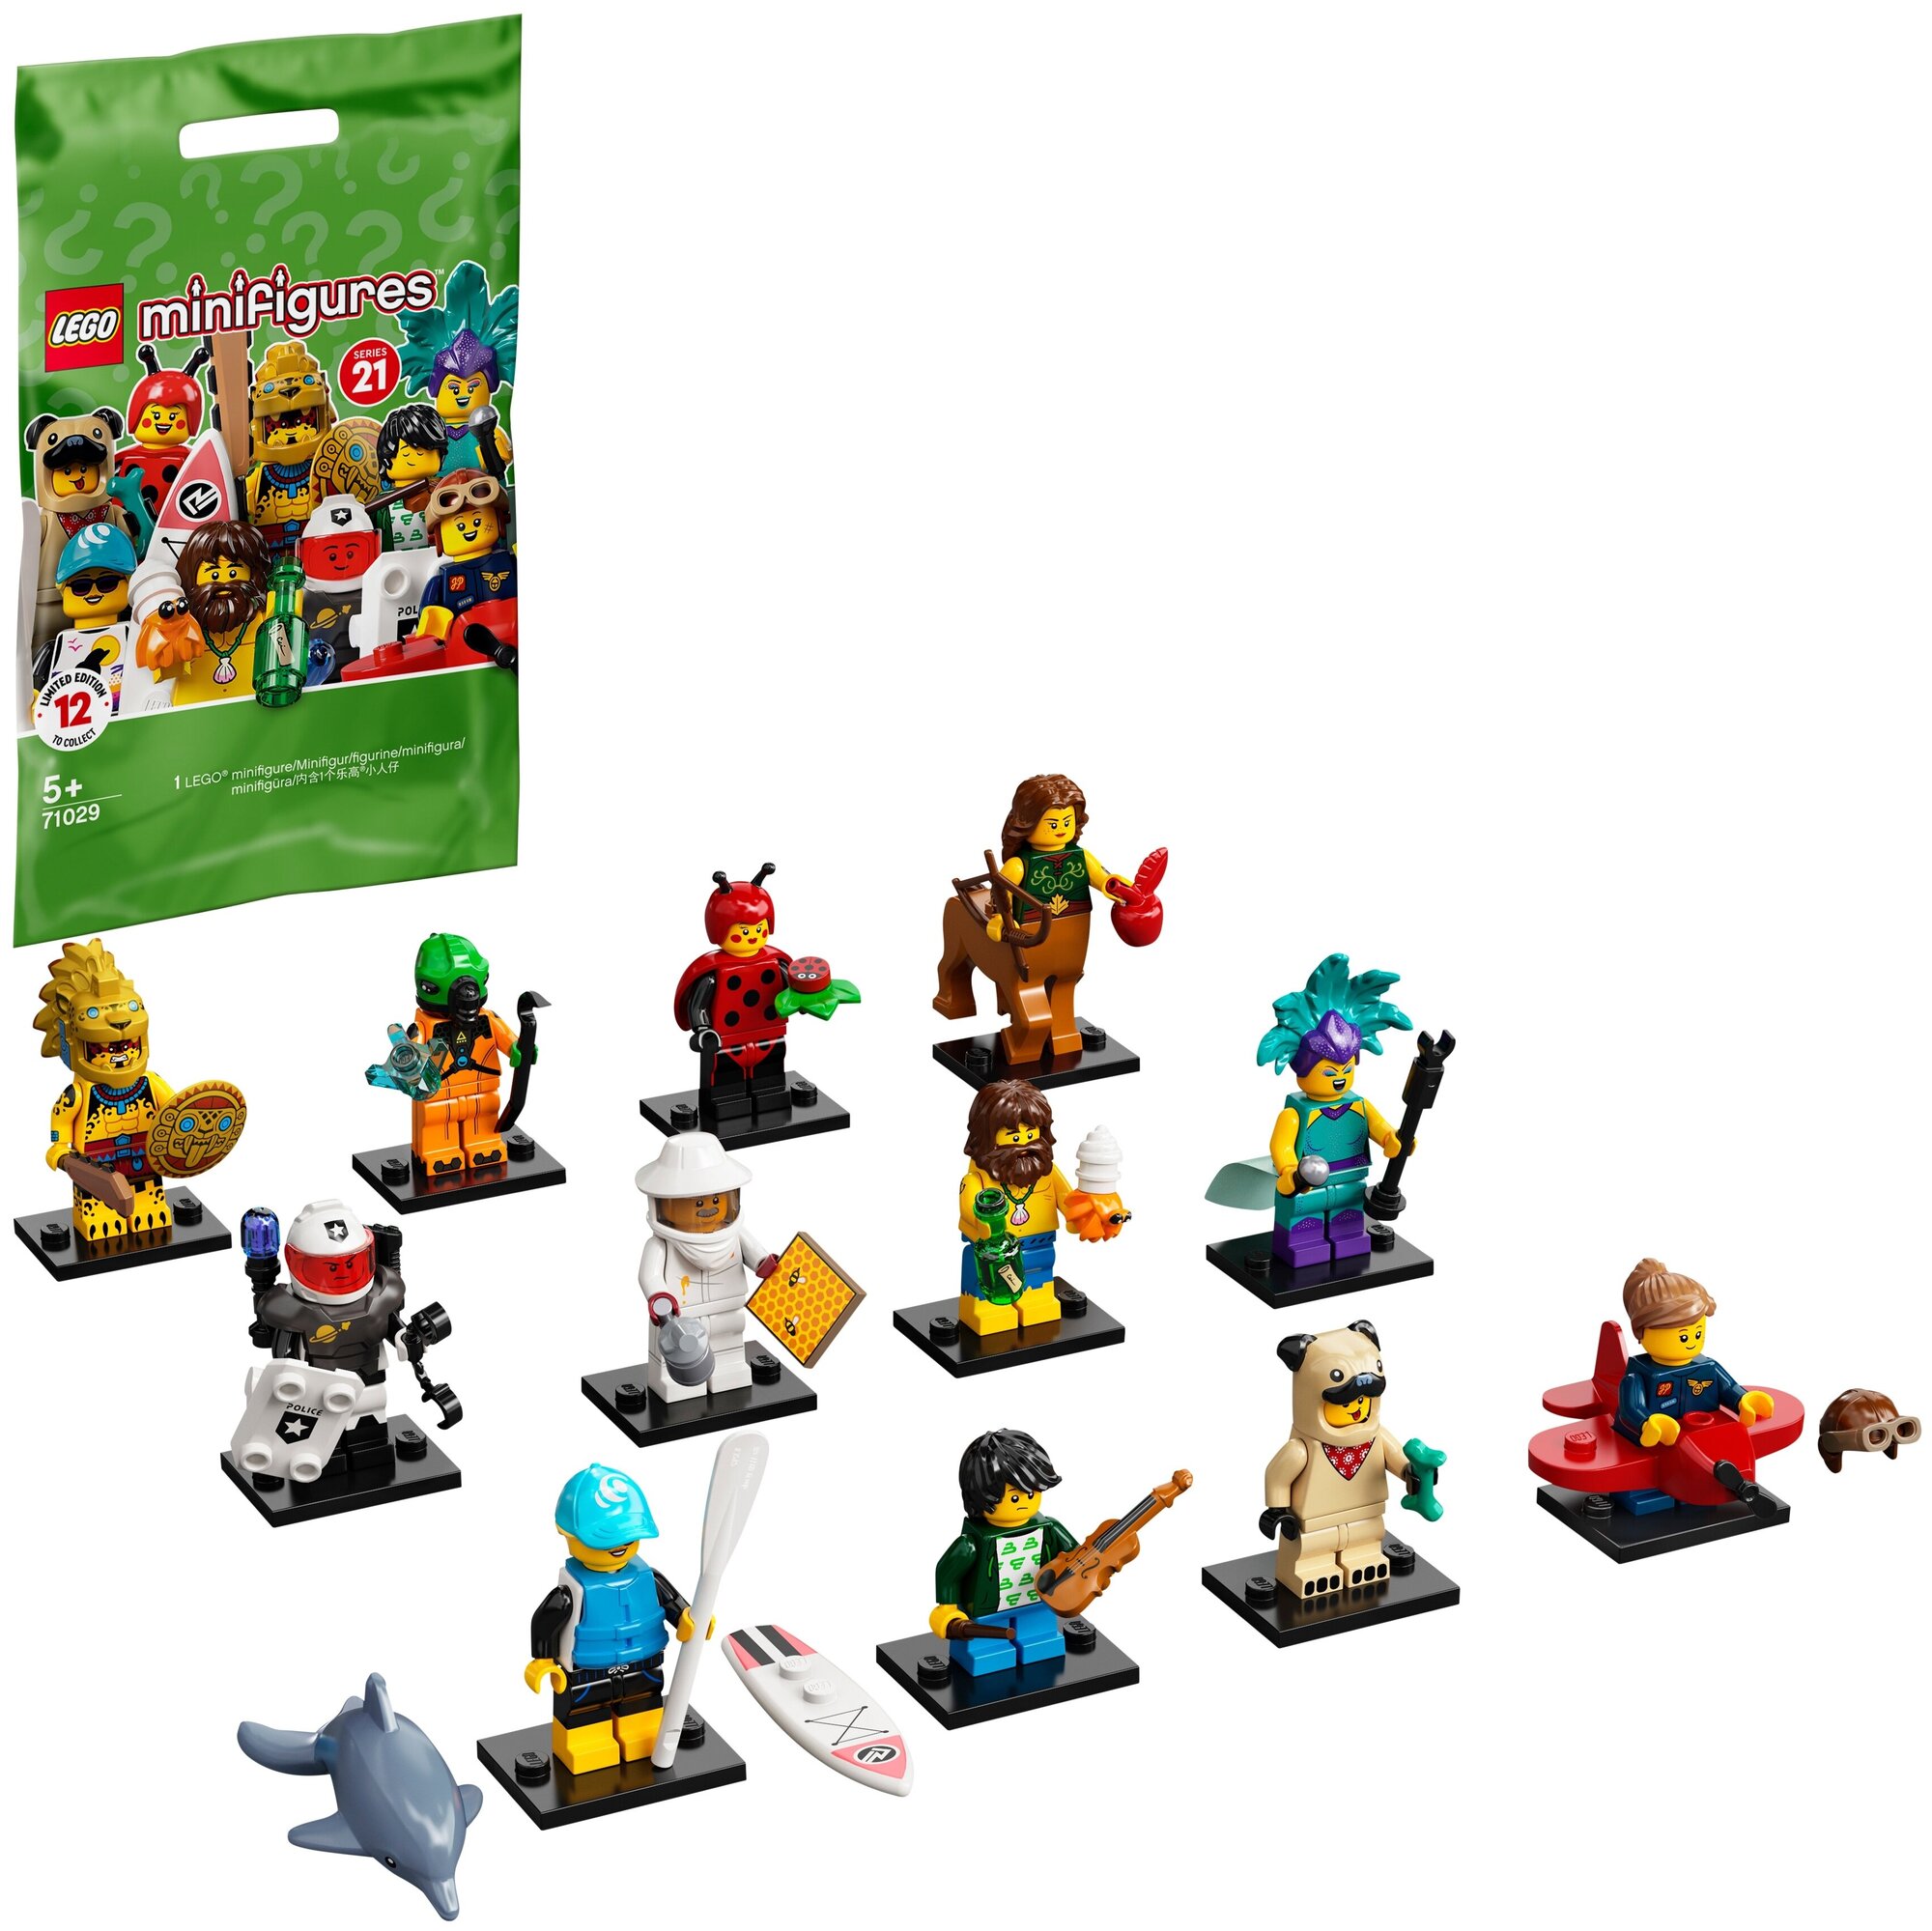 Конструктор LEGO Collectable Minifigures 71029 Серия 21, 8 дет.